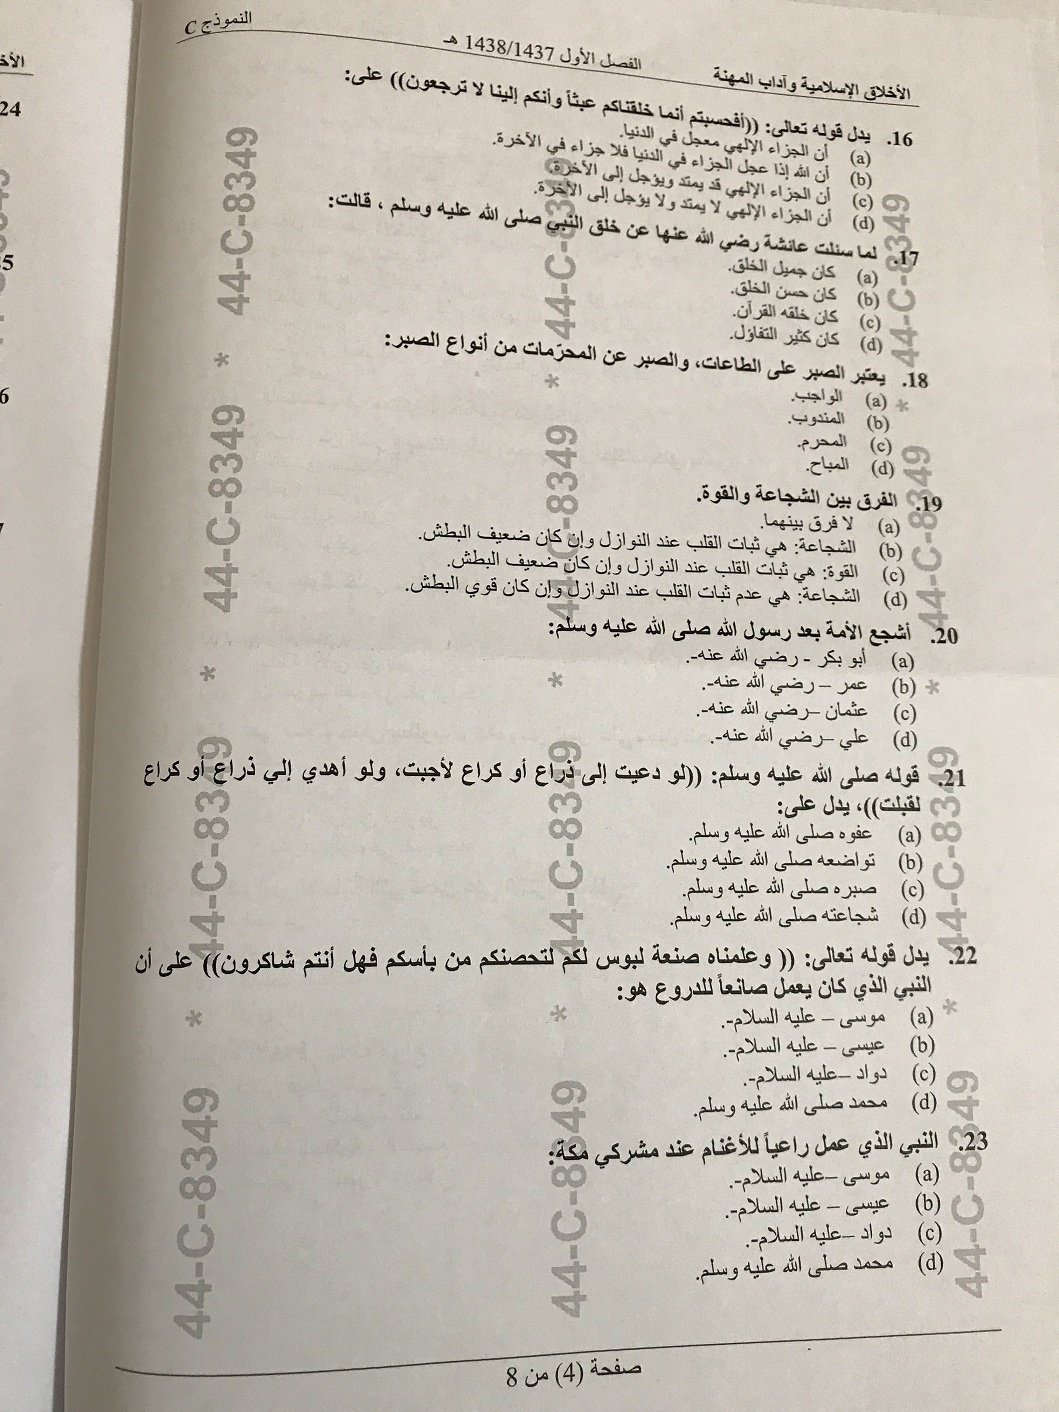 اختبار الأخلاق الاسلامية وآداب المهنة الفصل الاول 1438هـ